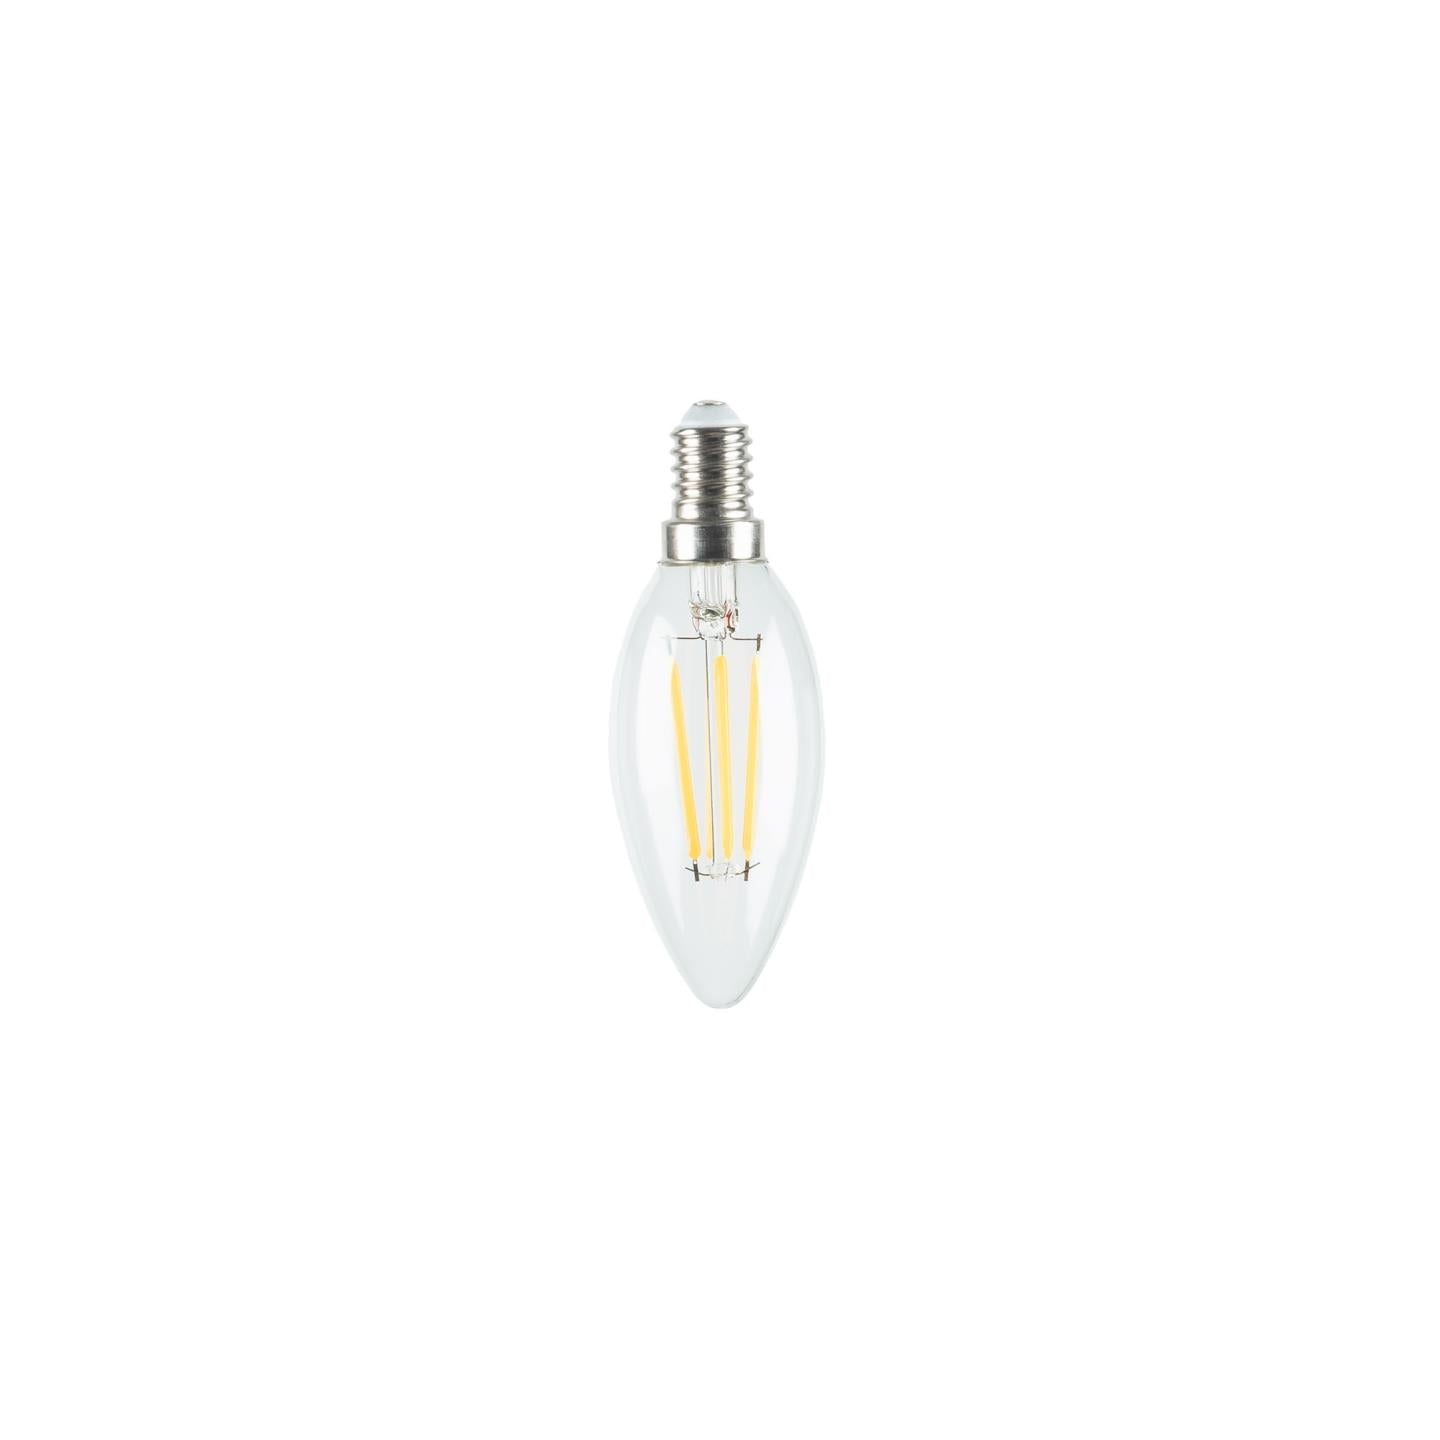 Bulb LED izzó E14 4W és 35 mm-es, melegfényű